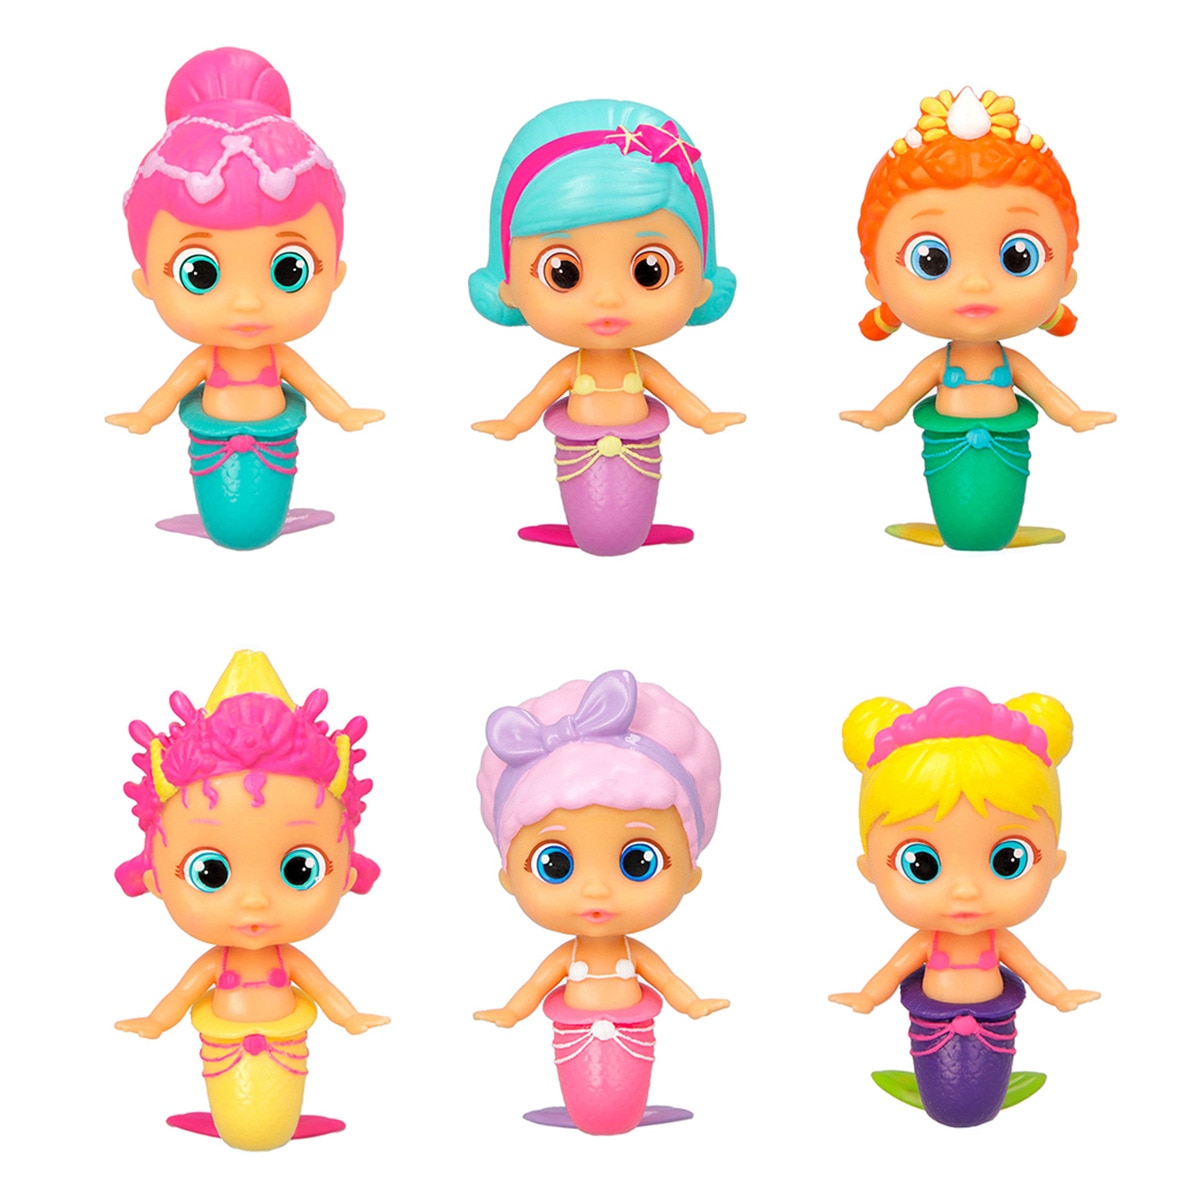 Bloopies - Bloopies Mermaids in a Bottle modelos surtidos.